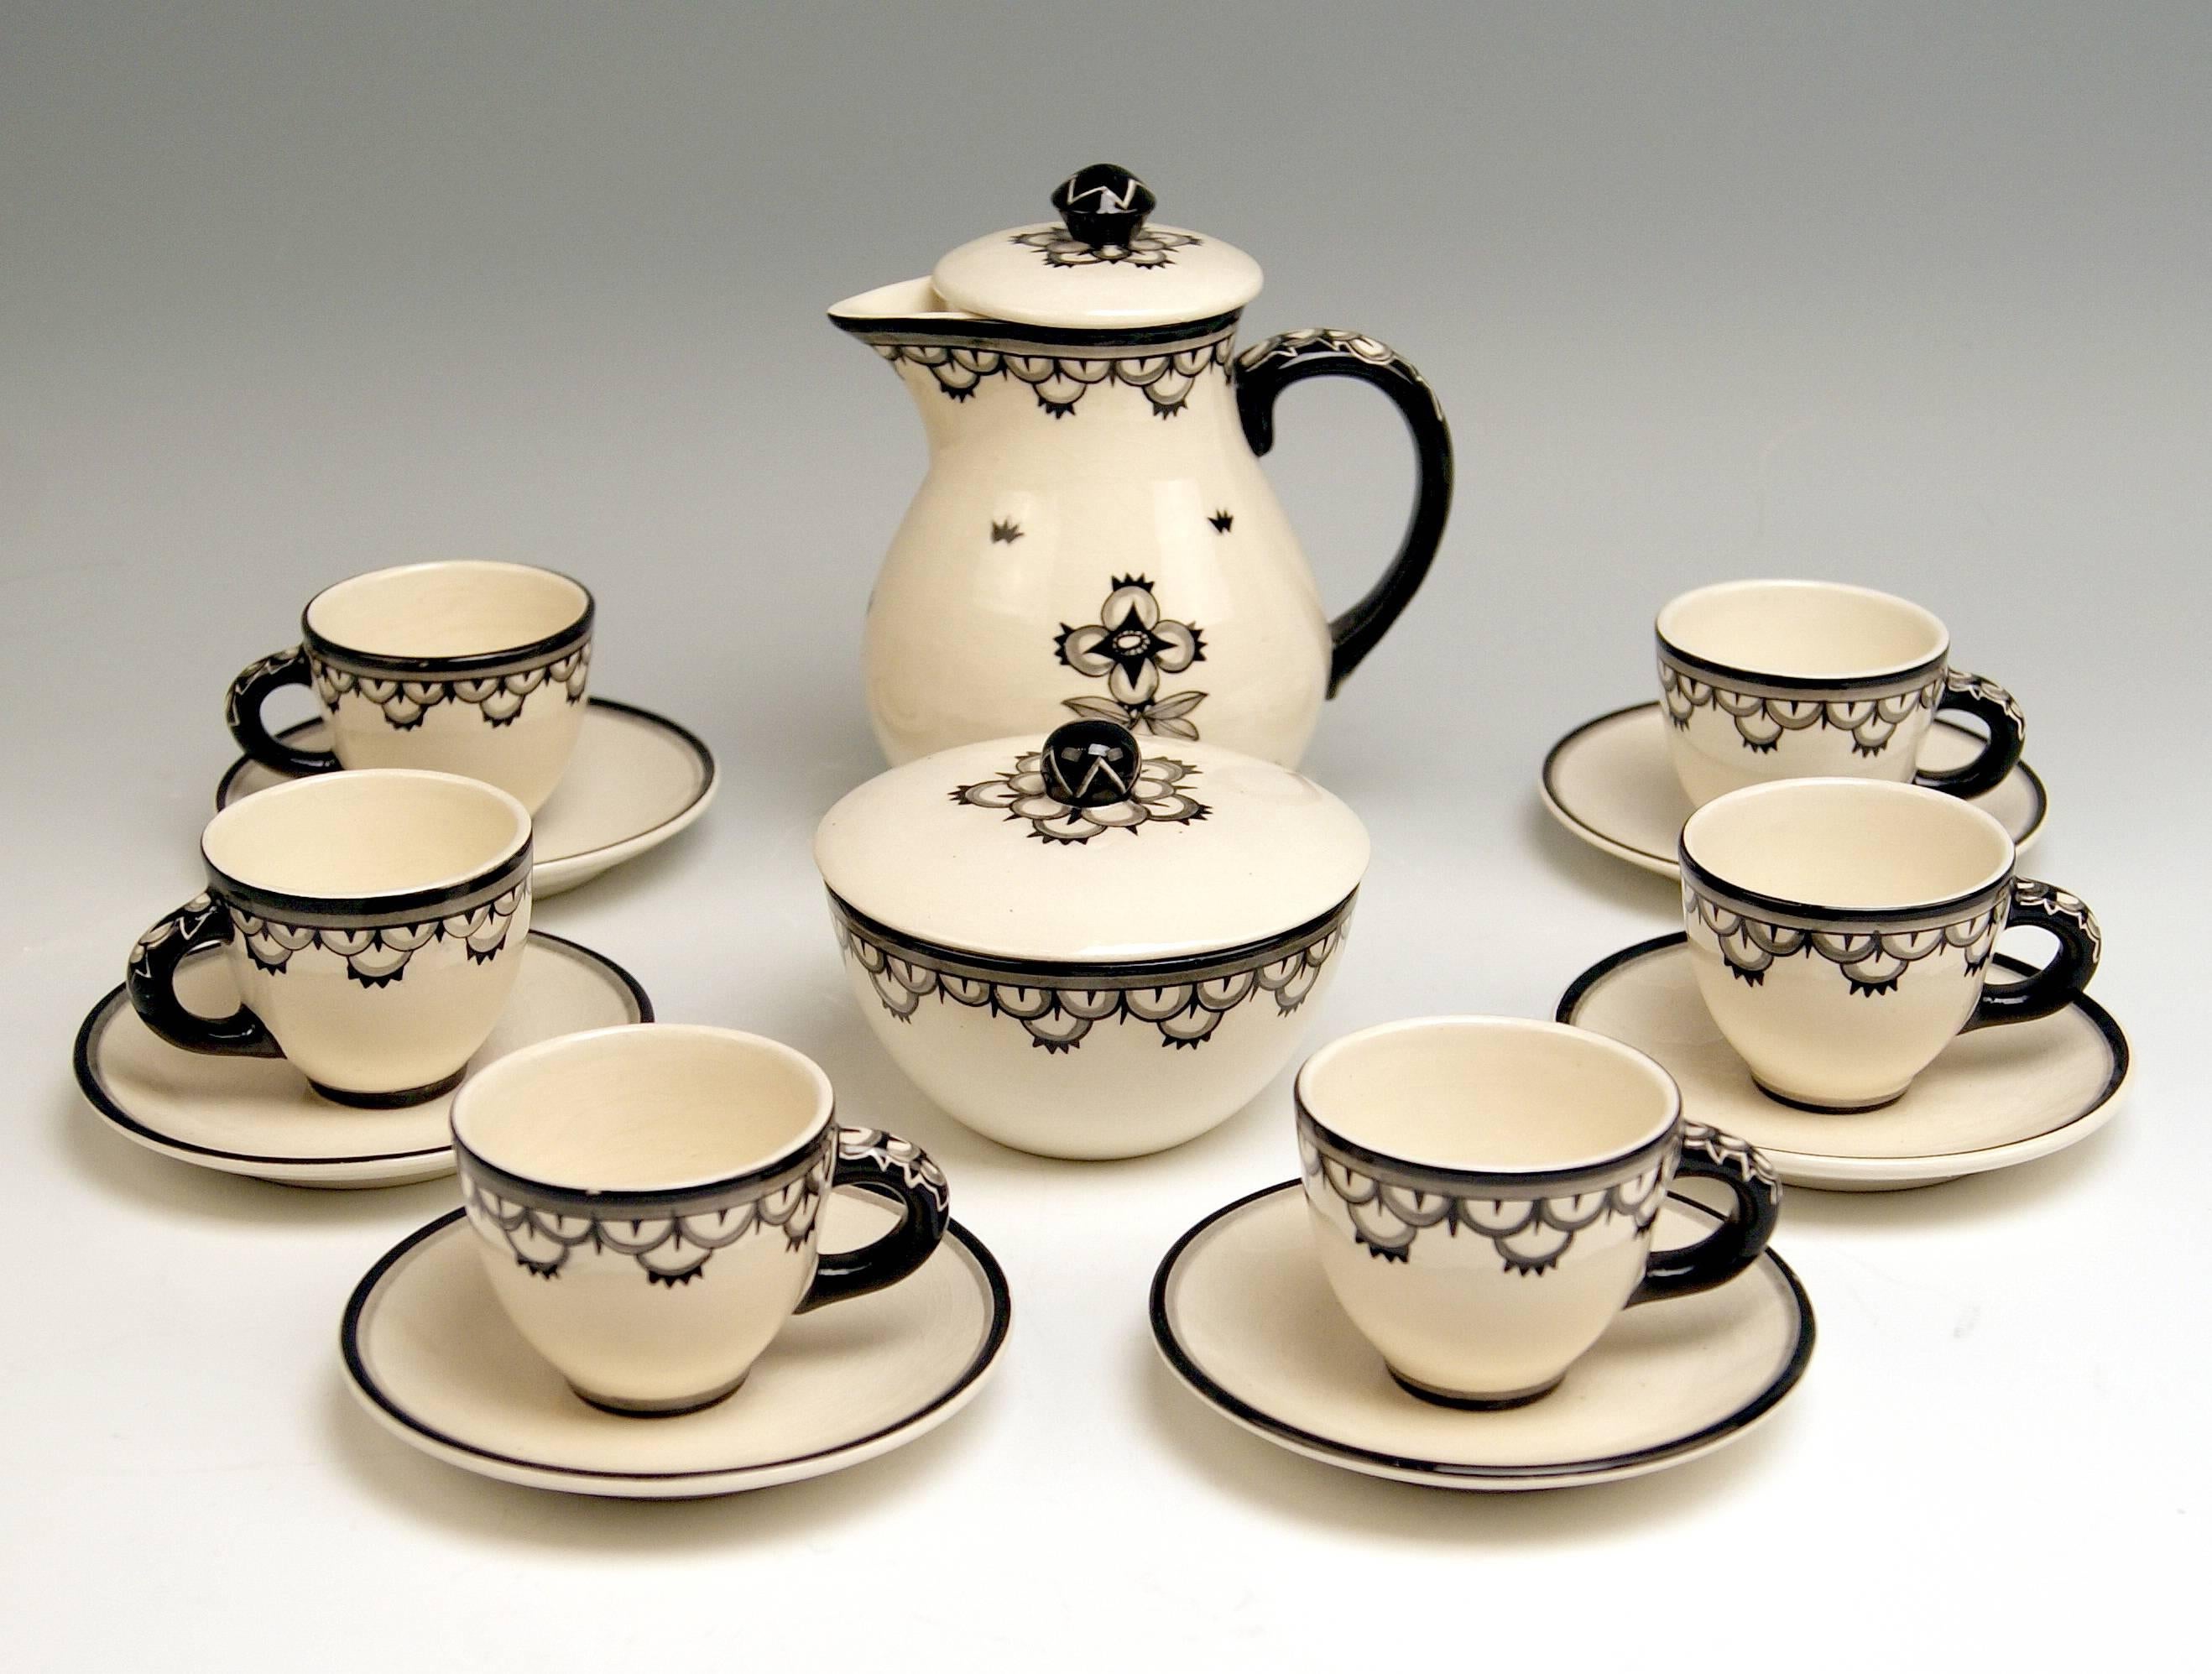 Elegantestes Mokka-Set für sechs Personen
aus cremeweißer Keramik / glasiert und teilweise schwarz bemalt / sehr interessantes stilisiertes monochromes Muster:
Es ist stark von den Entwürfen von Dagobert Peche beeinflusst! 

Wir präsentieren